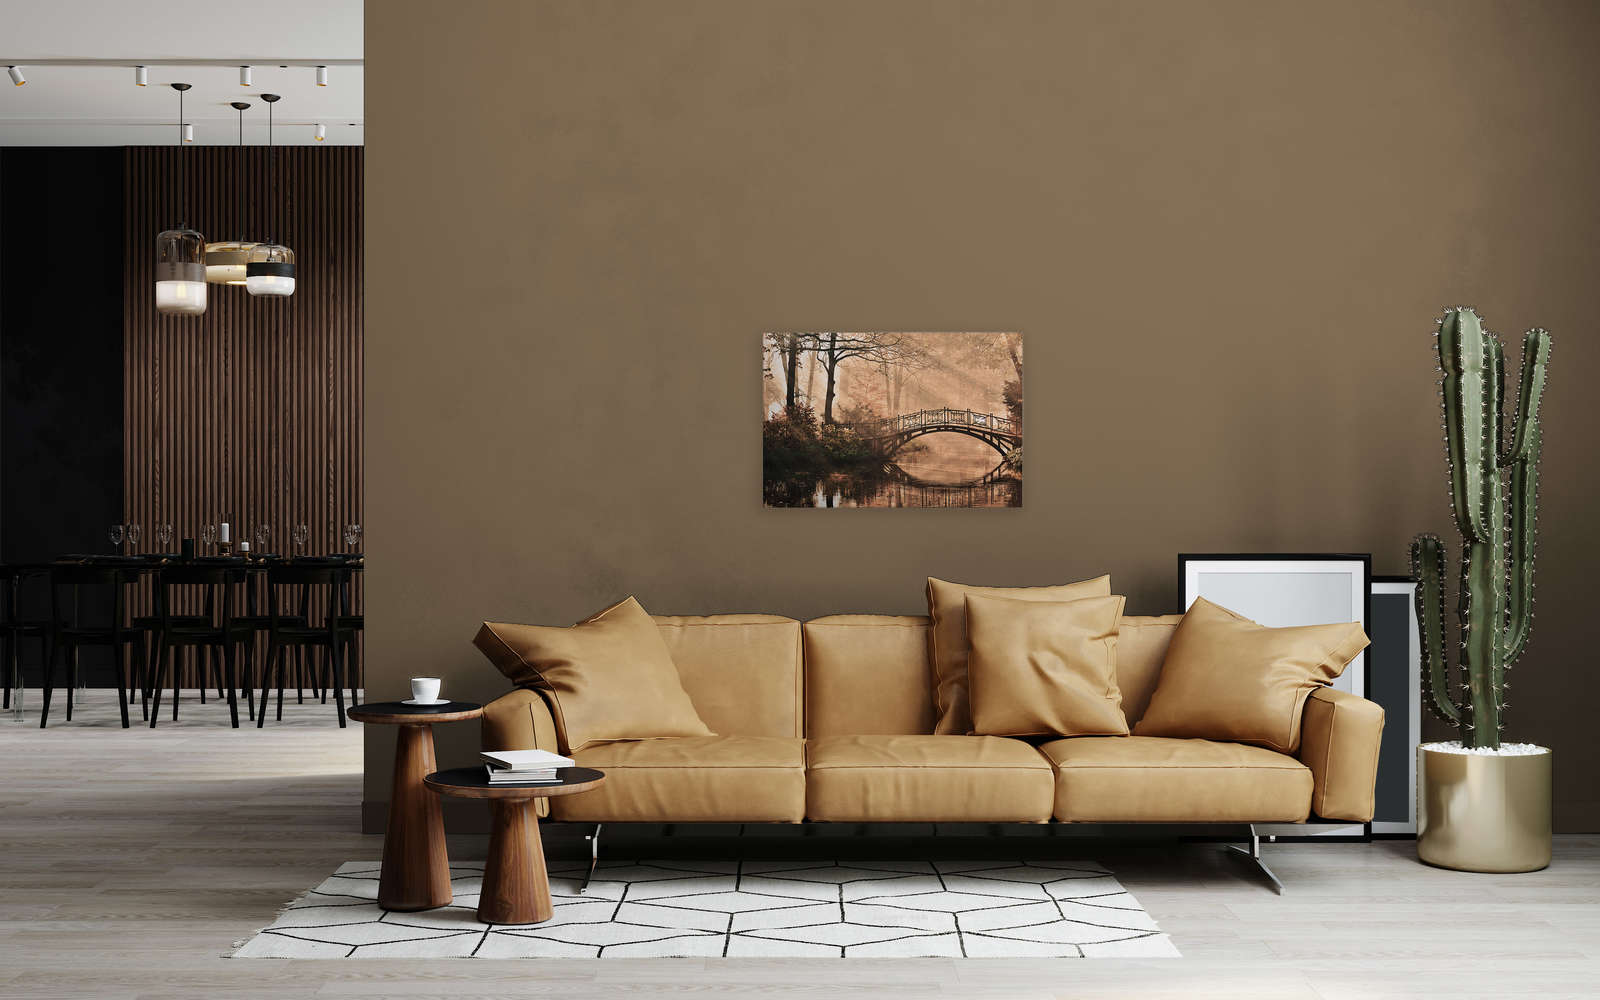             Canvas met Loofbos met rivier & brug - 0,90 m x 0,60 m
        